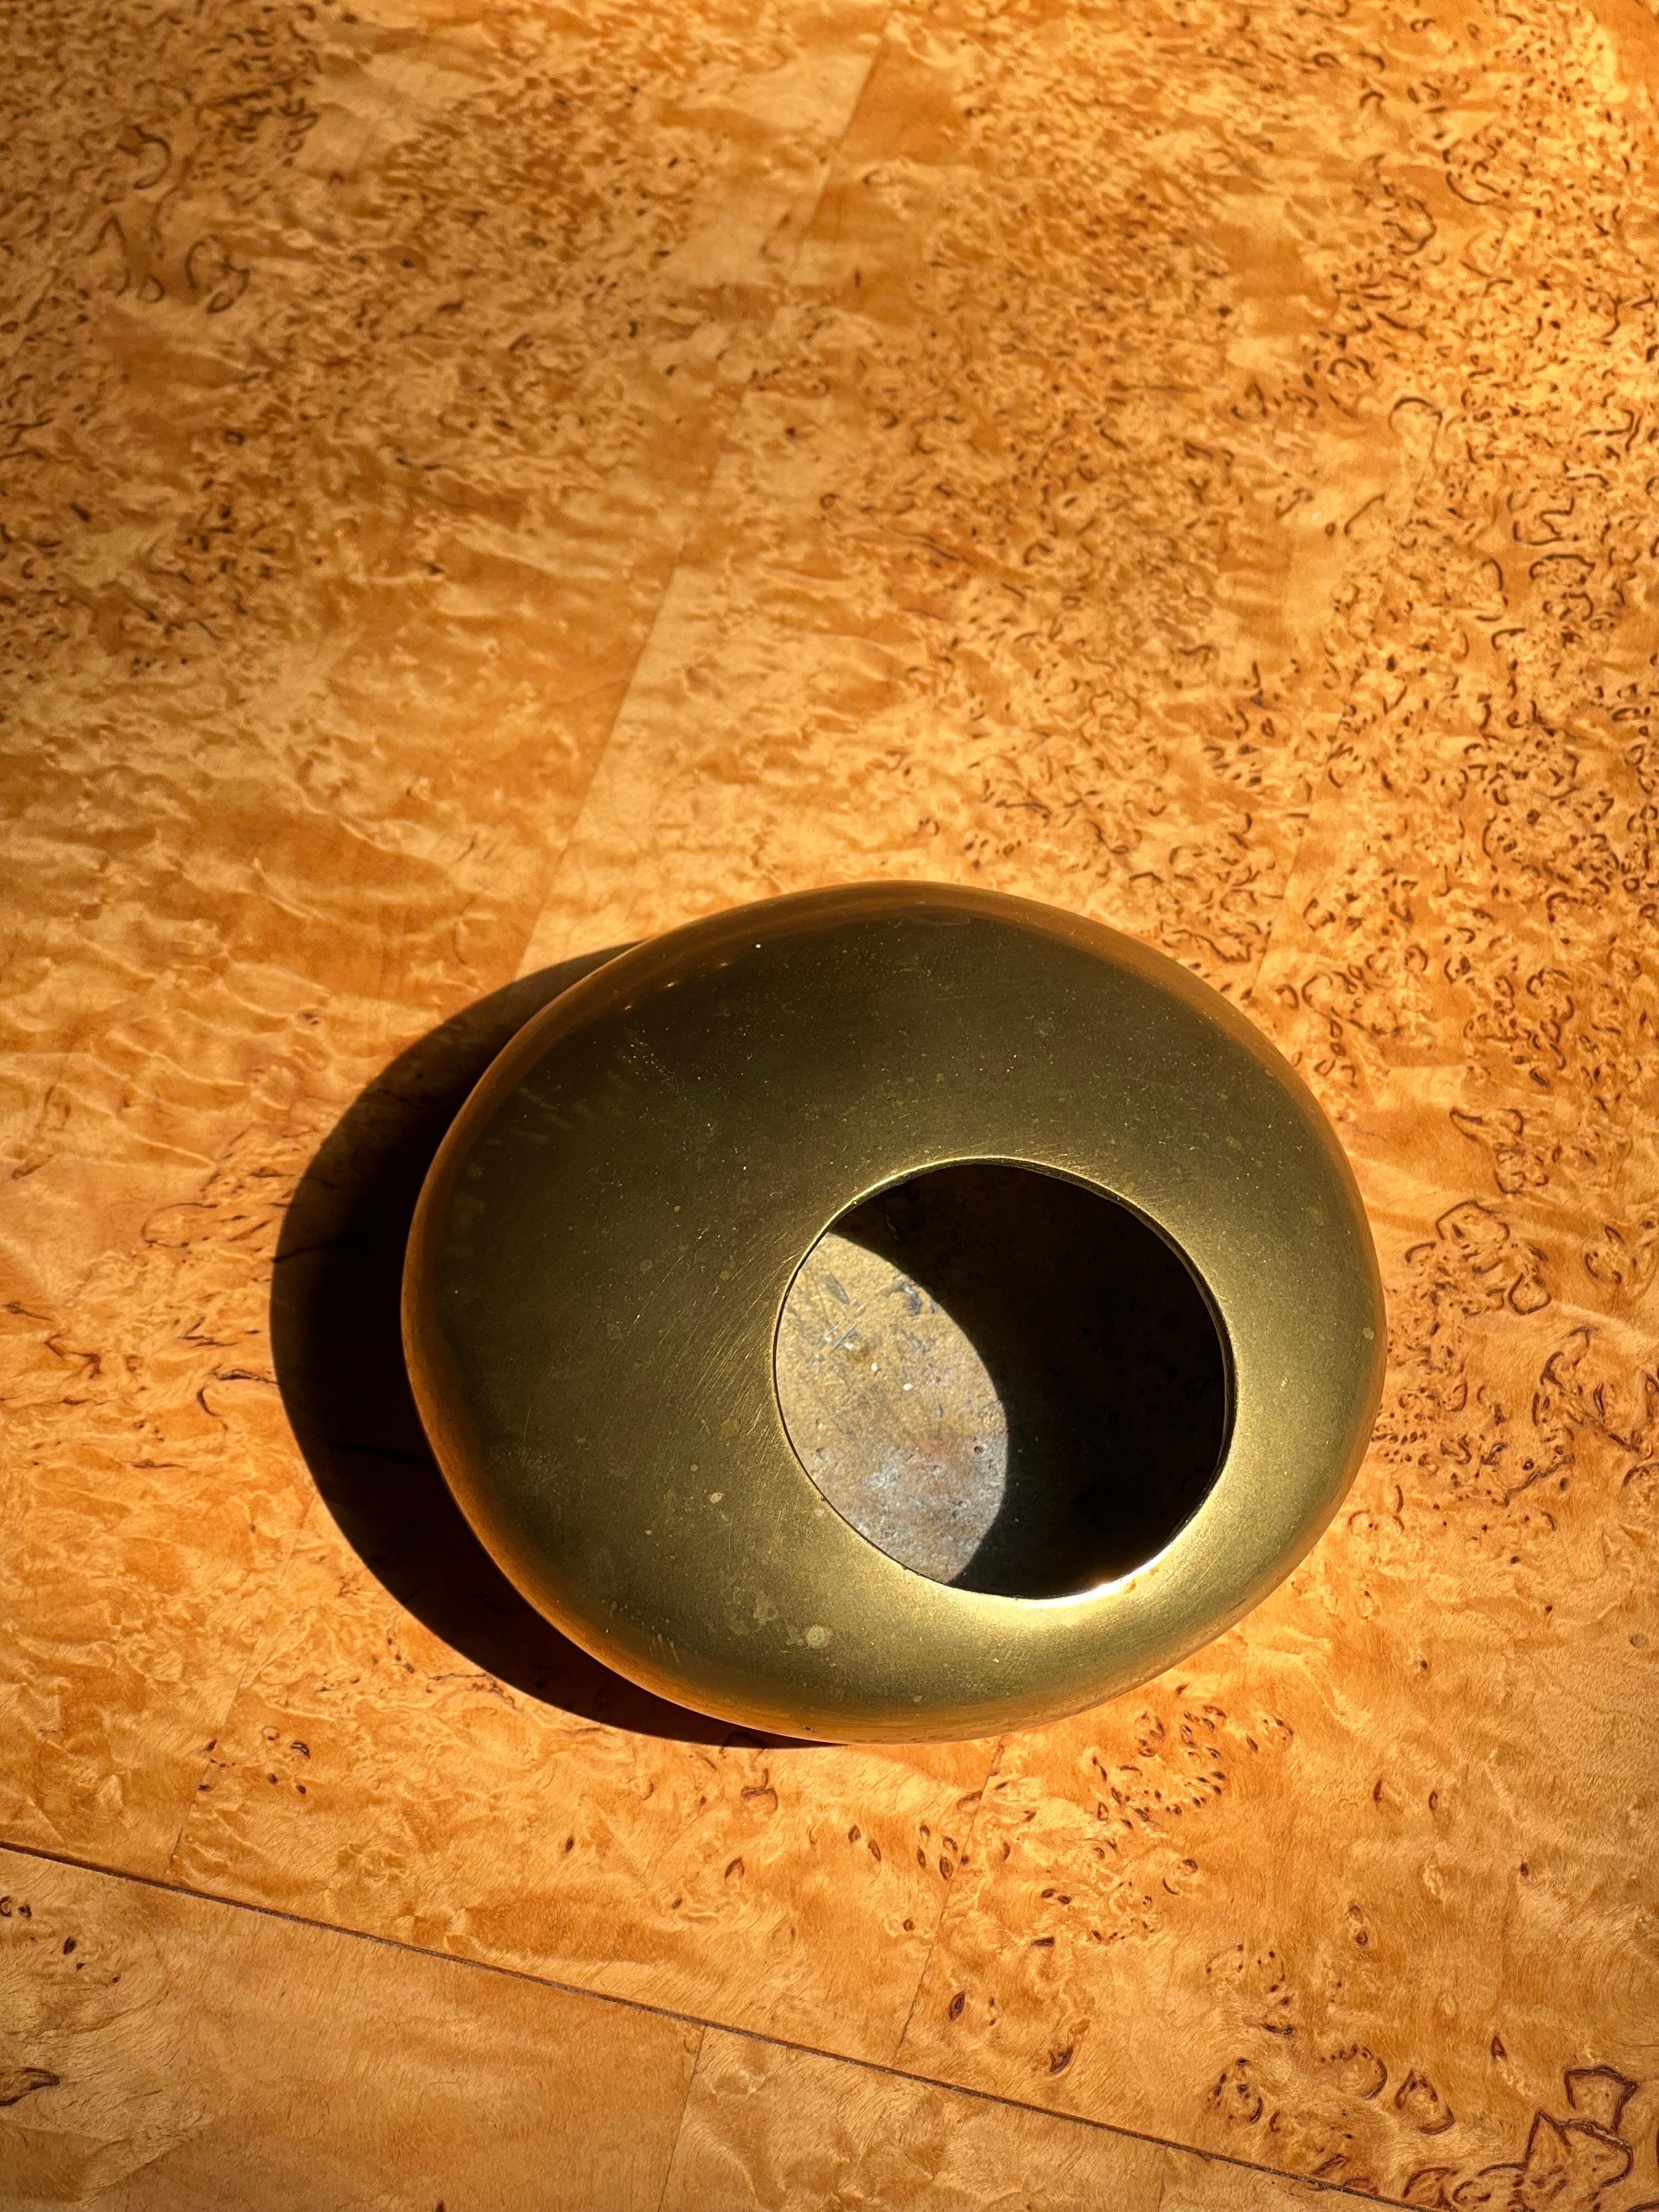 Cendrier unique et rare en bronze attribué à Roger Tallon. Il ressemble beaucoup à l'ORB qu'il a conçu, mais nous n'en sommes pas sûrs à 100 % et nous préférons donc l'attribuer. Bronze massif, de forme organique. Aussi lisse qu'une belle pierre.